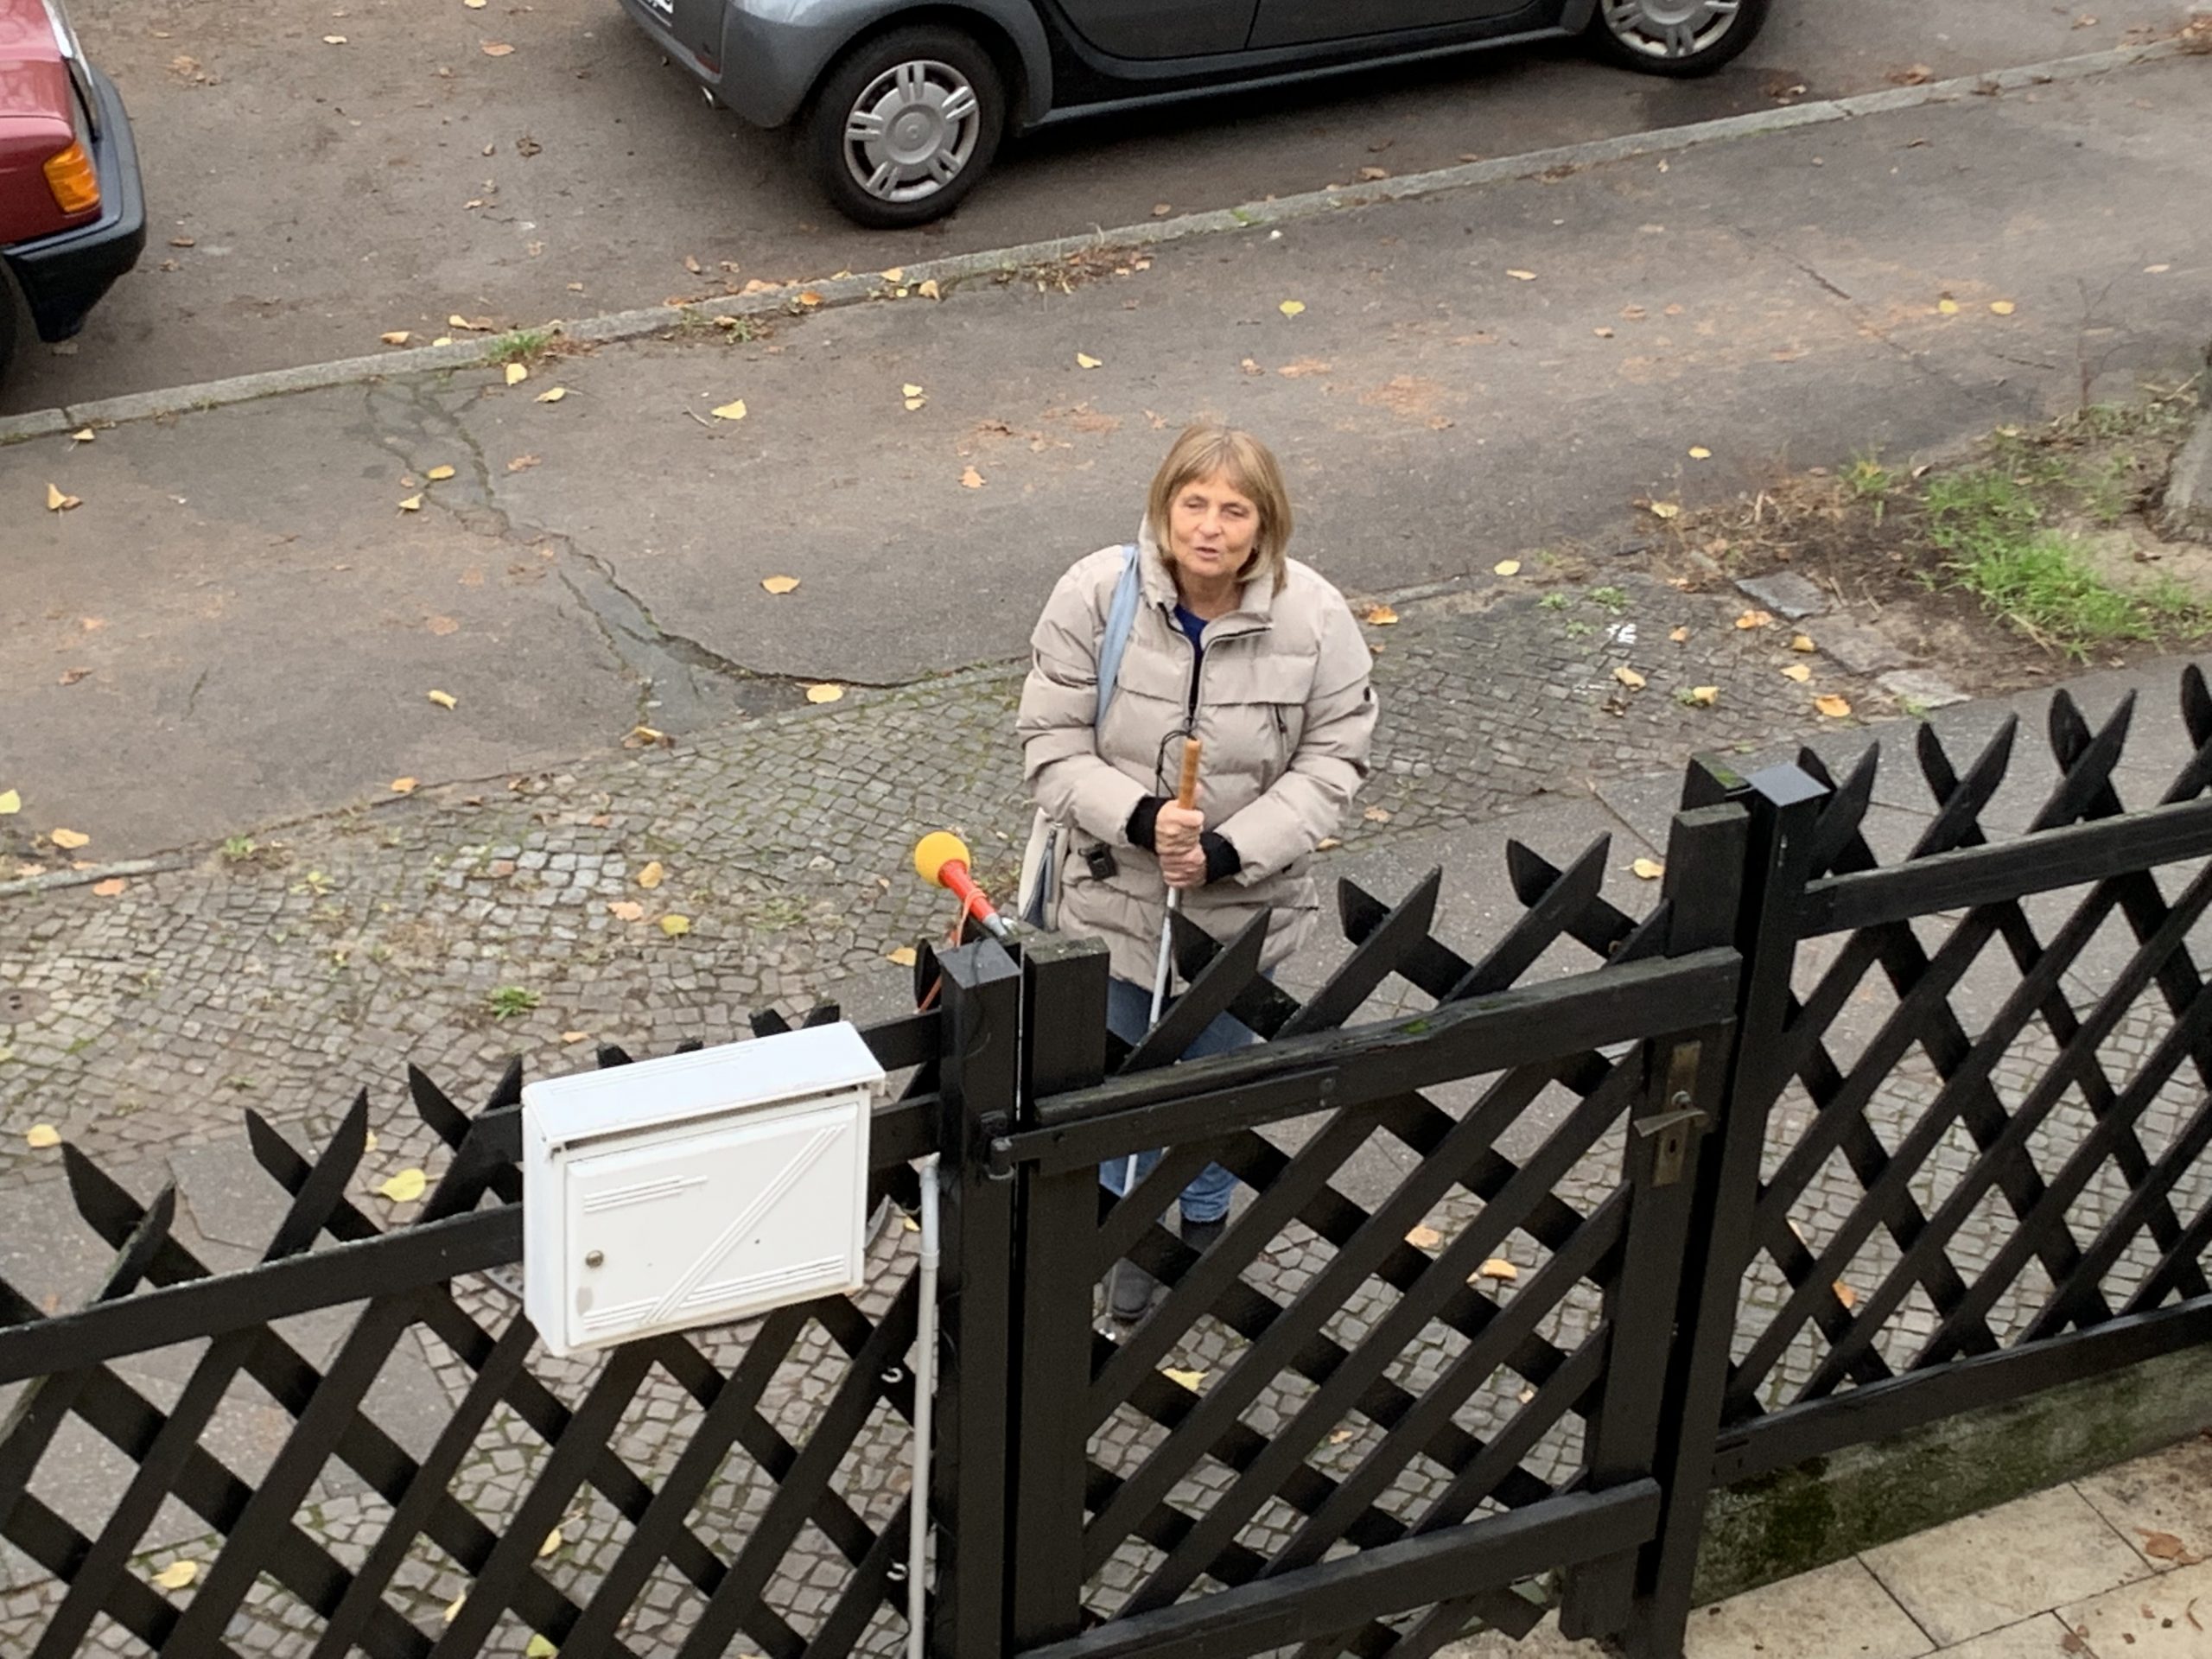 Die Blindgängerin von oben aufgenommen. In einer hellen Winterjacke steht sie auf dem Gehweg vor einem Gartenzaun. Am Zaunpfosten ist ein Mikrofon befestigt.